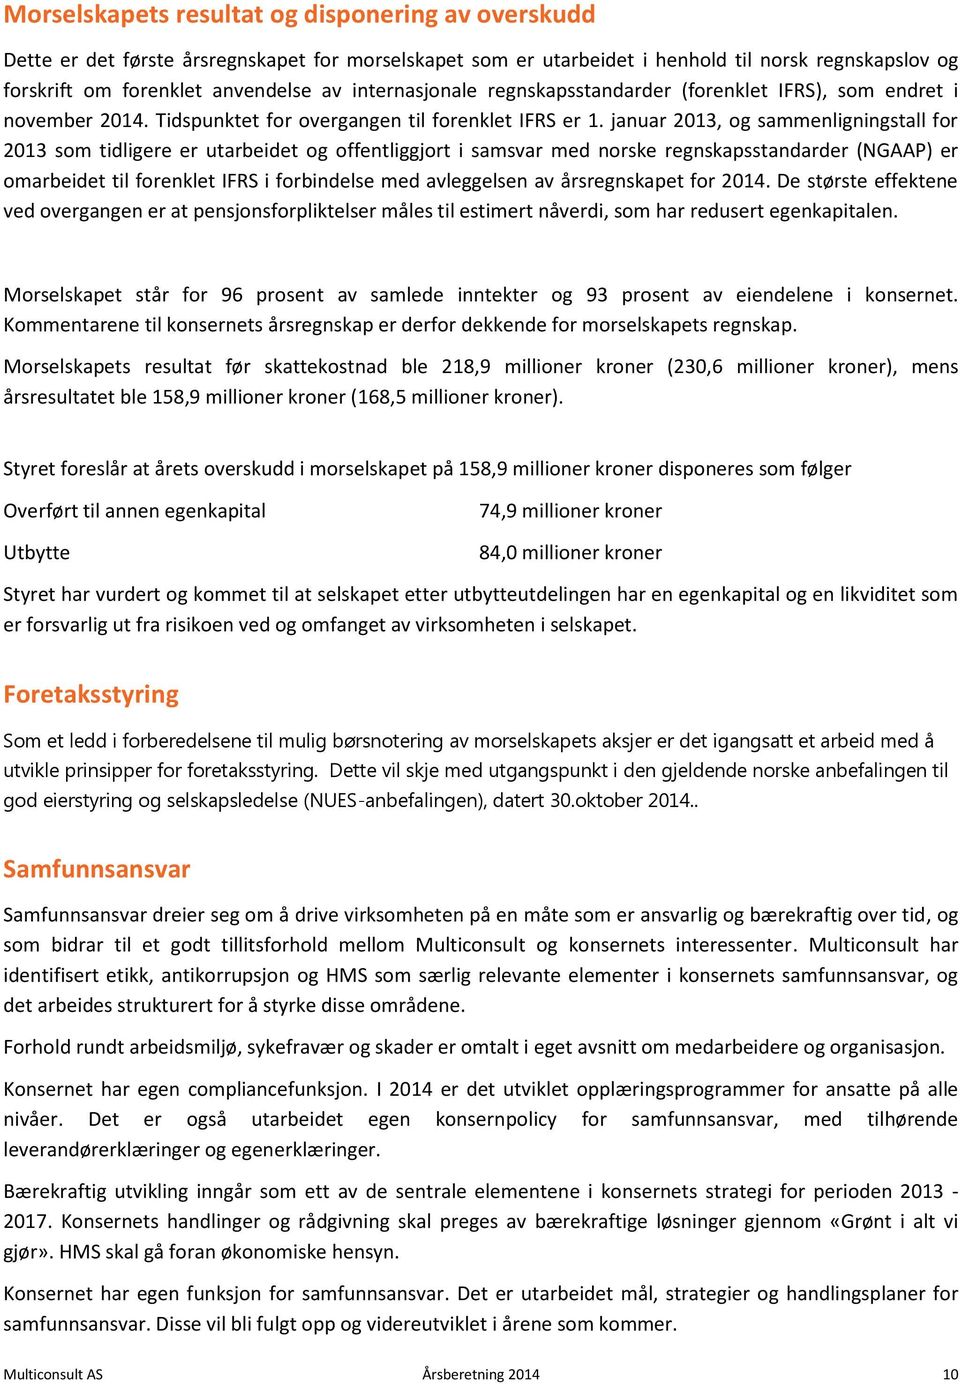 januar 2013, og sammenligningstall for 2013 som tidligere er utarbeidet og offentliggjort i samsvar med norske regnskapsstandarder (NGAAP) er omarbeidet til forenklet IFRS i forbindelse med